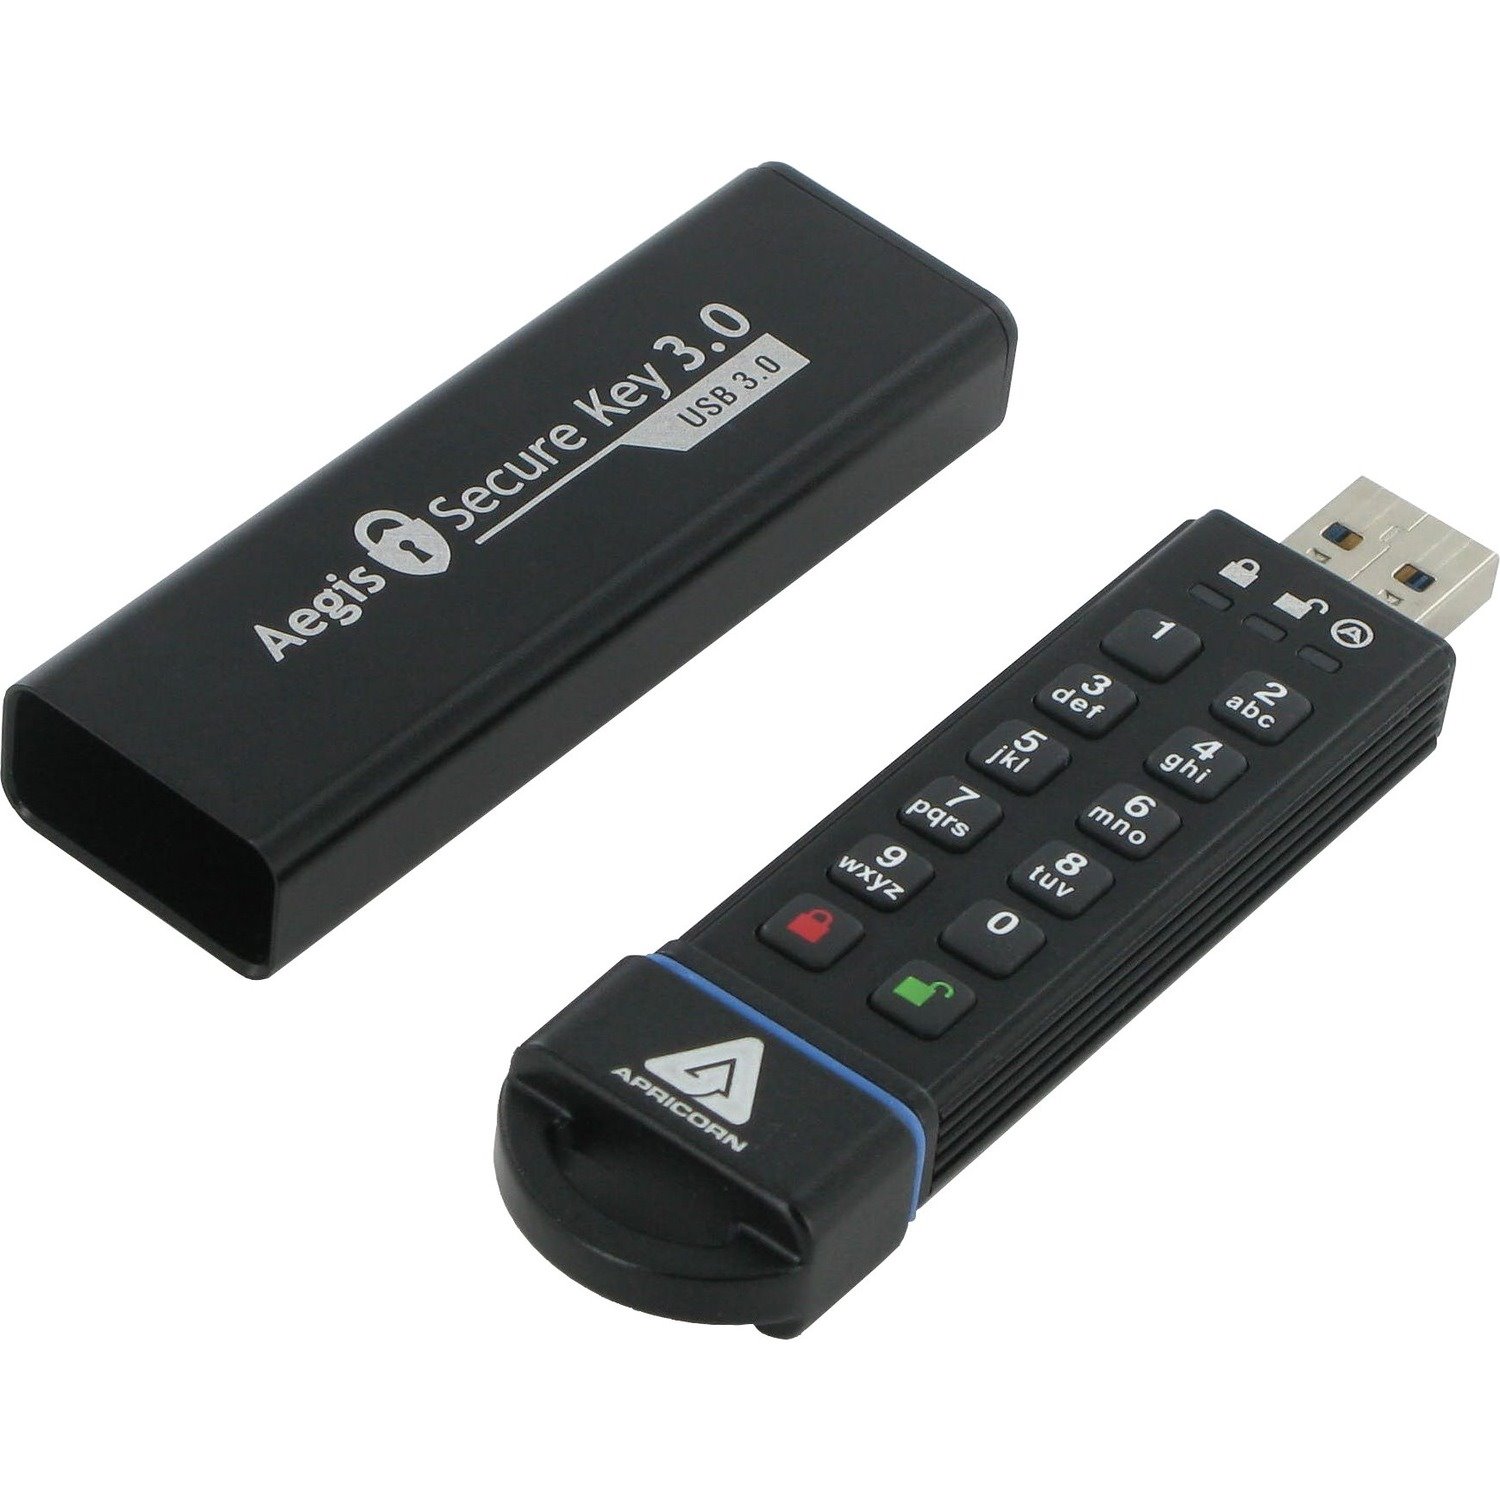 Apricorn Aegis Secure Key 3.0 30 GB USB 3.0 Flash Drive - 256-bit AES - TAA Compliant